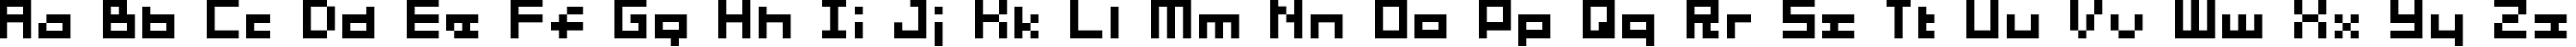 Пример написания английского алфавита шрифтом 04b_03b